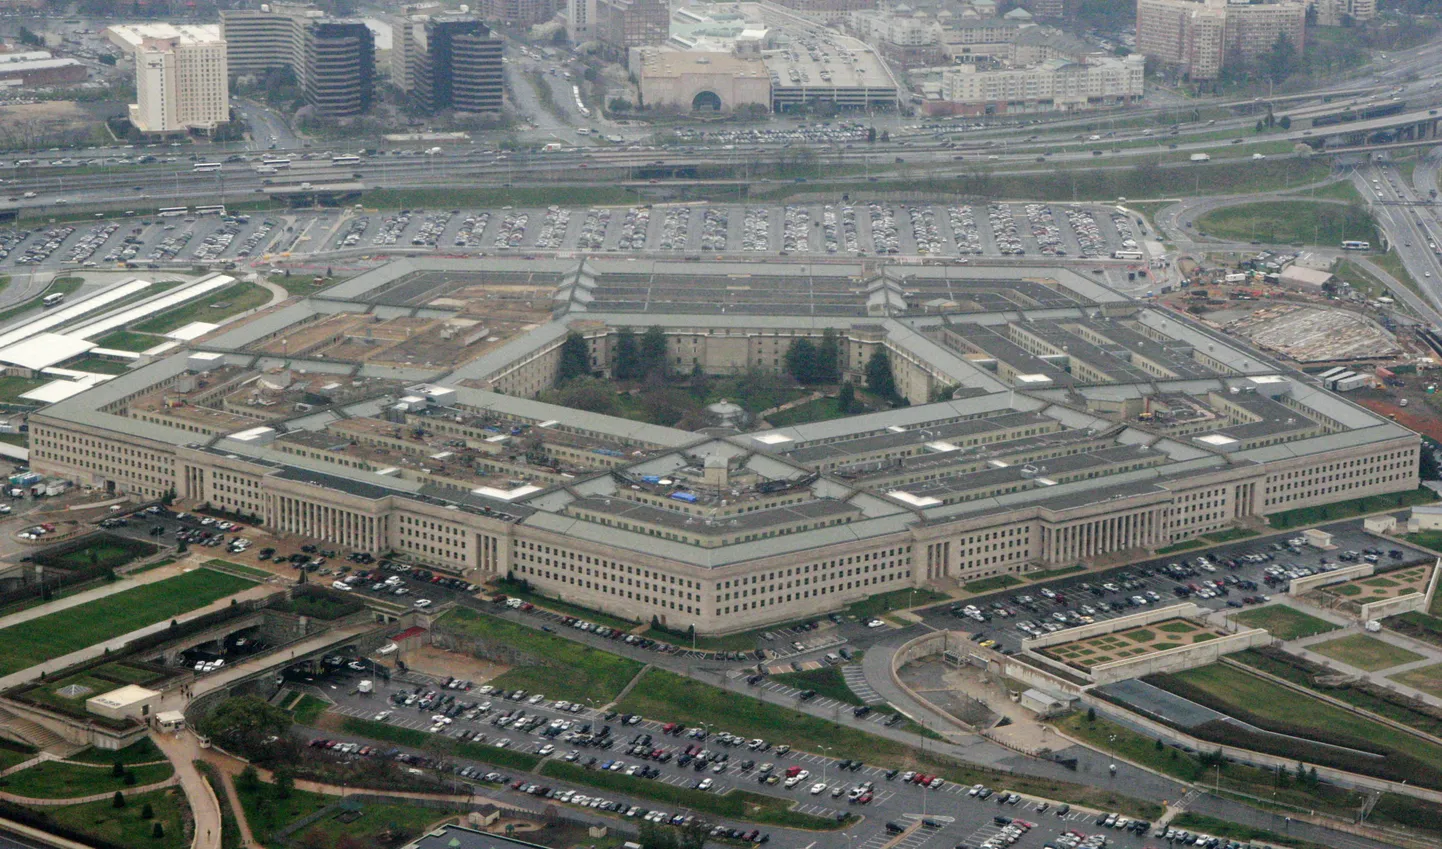 USA kaitseministeerium (Pentagon), mille kodulehekülge kräkker ründas.